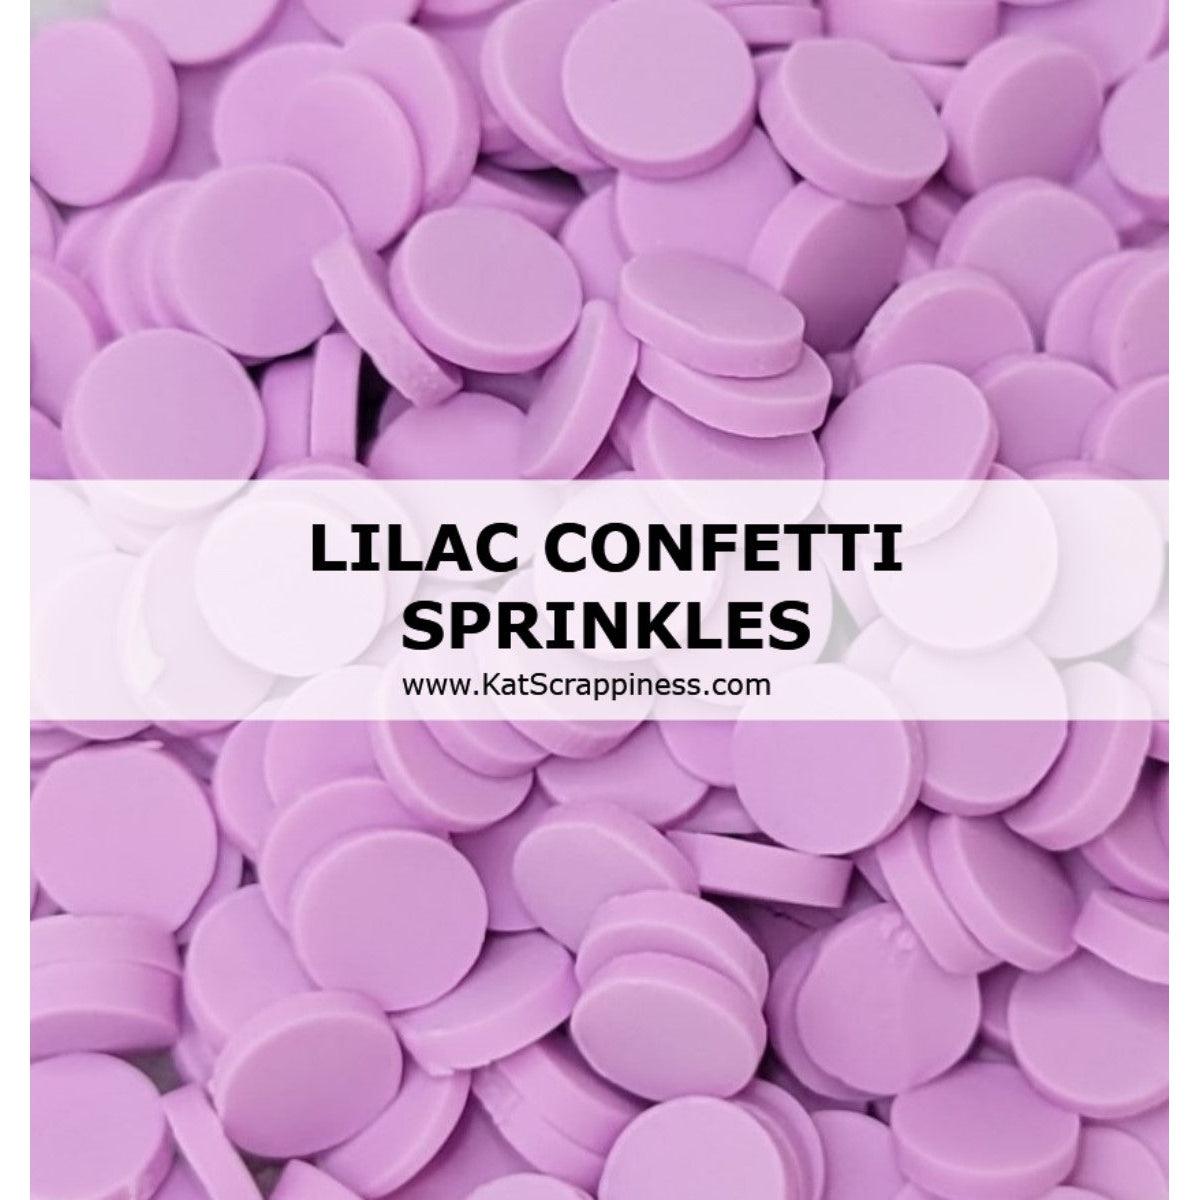 Lilac Confetti Sprinkles